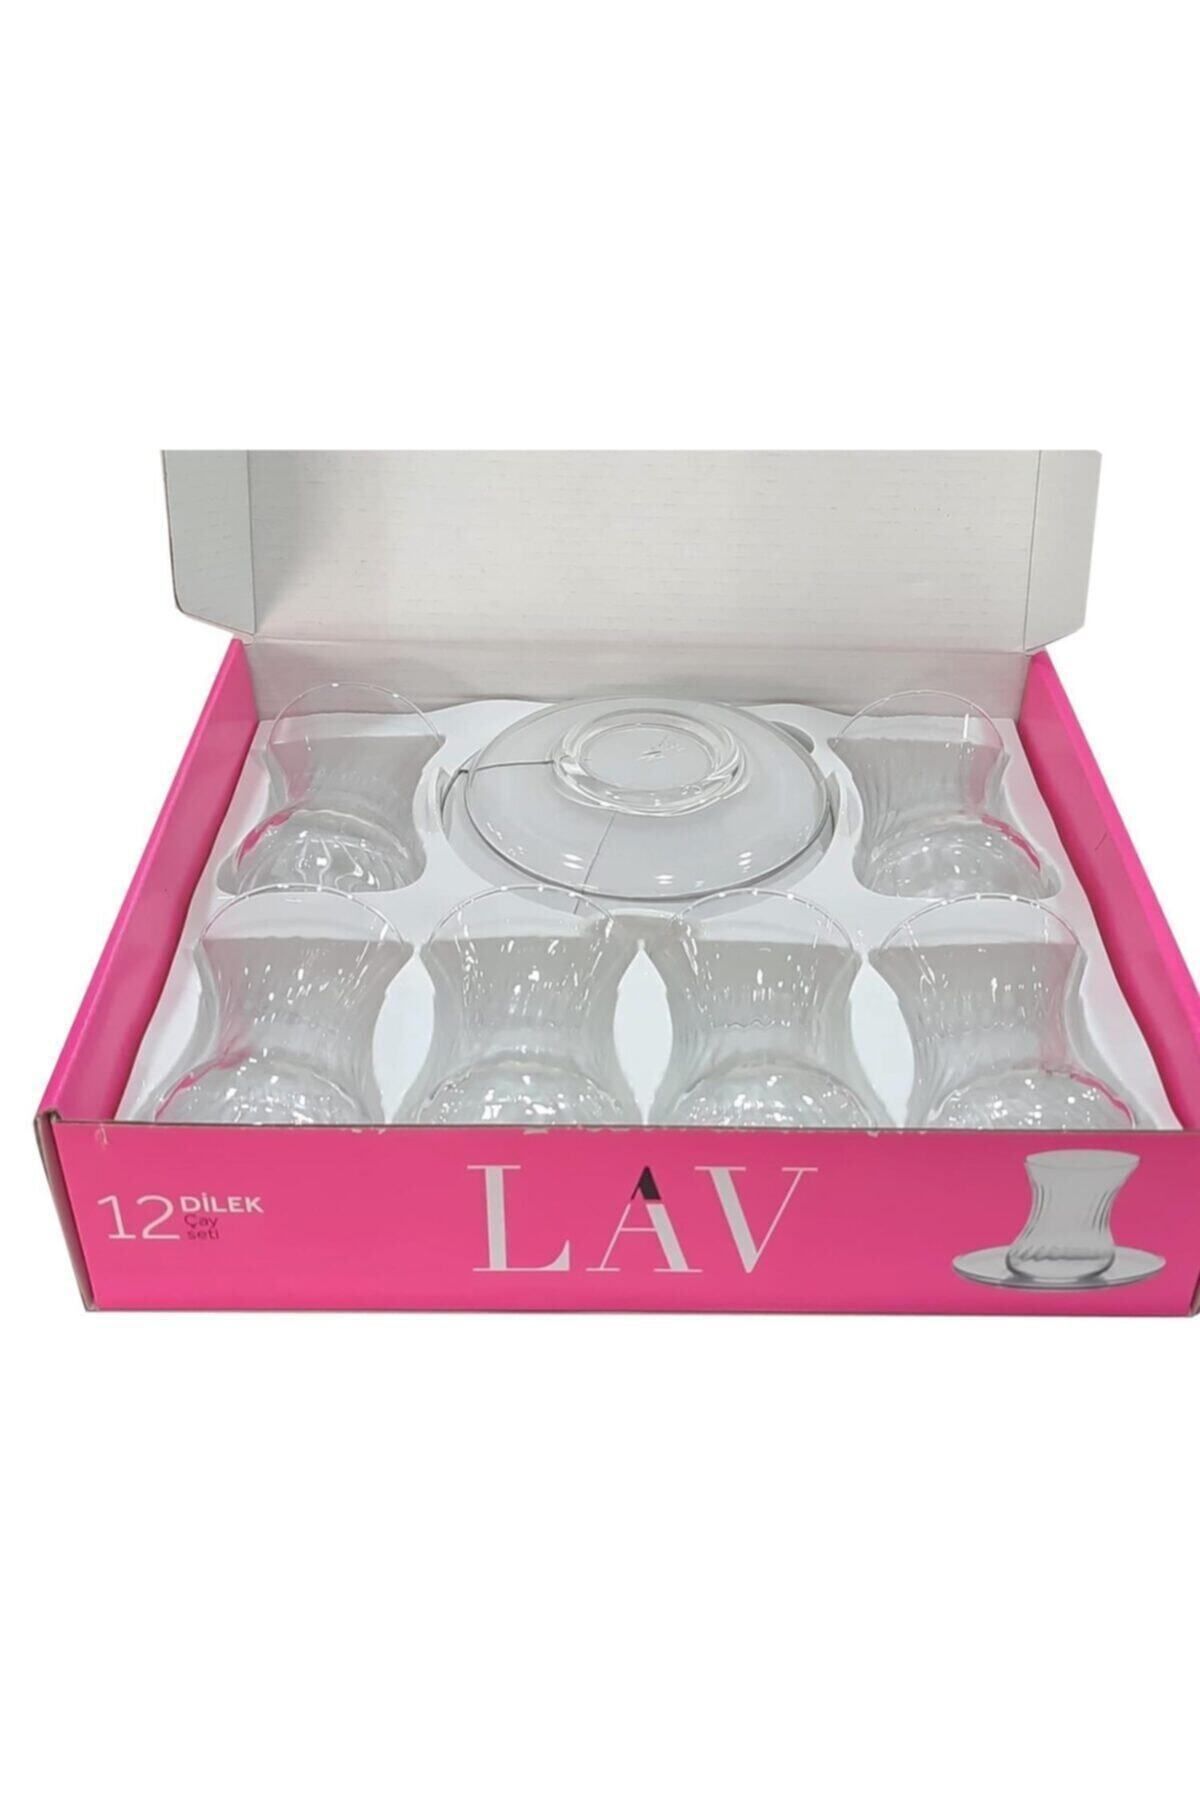 Lav Dilek 12 Li Çay Seti - ( 6 Çay Bardağı + 6 Çay Tabağı )